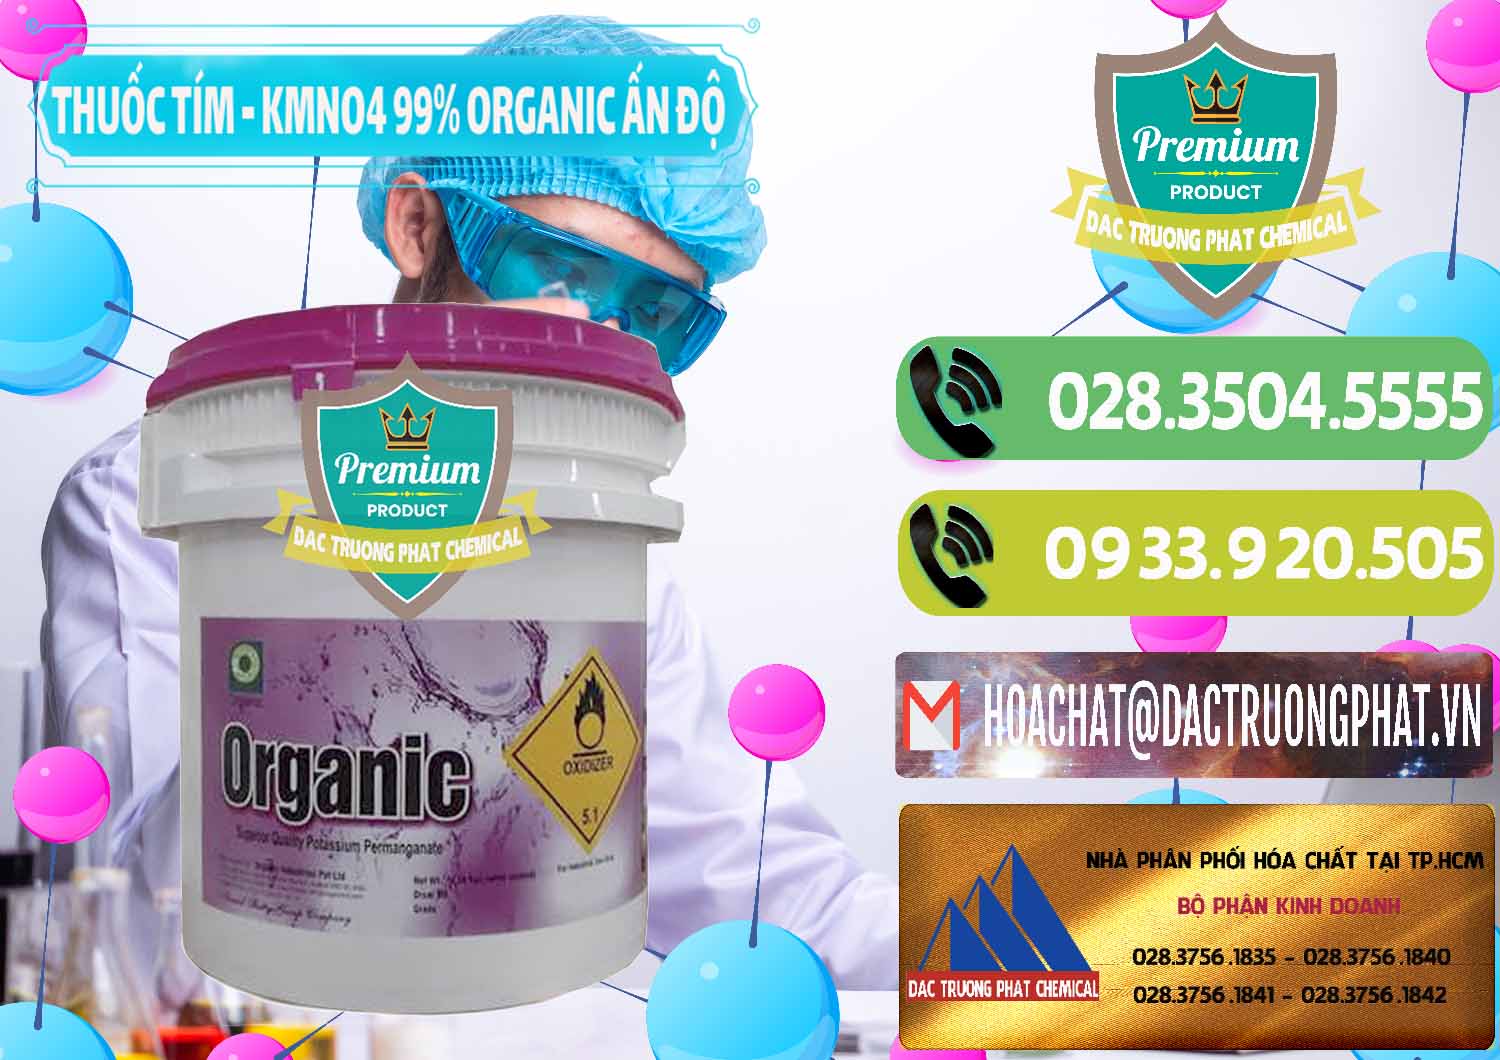 Công ty chuyên cung cấp và bán Thuốc Tím - KMNO4 99% Organic Ấn Độ India - 0216 - Nhà phân phối - cung cấp hóa chất tại TP.HCM - hoachatmientay.vn